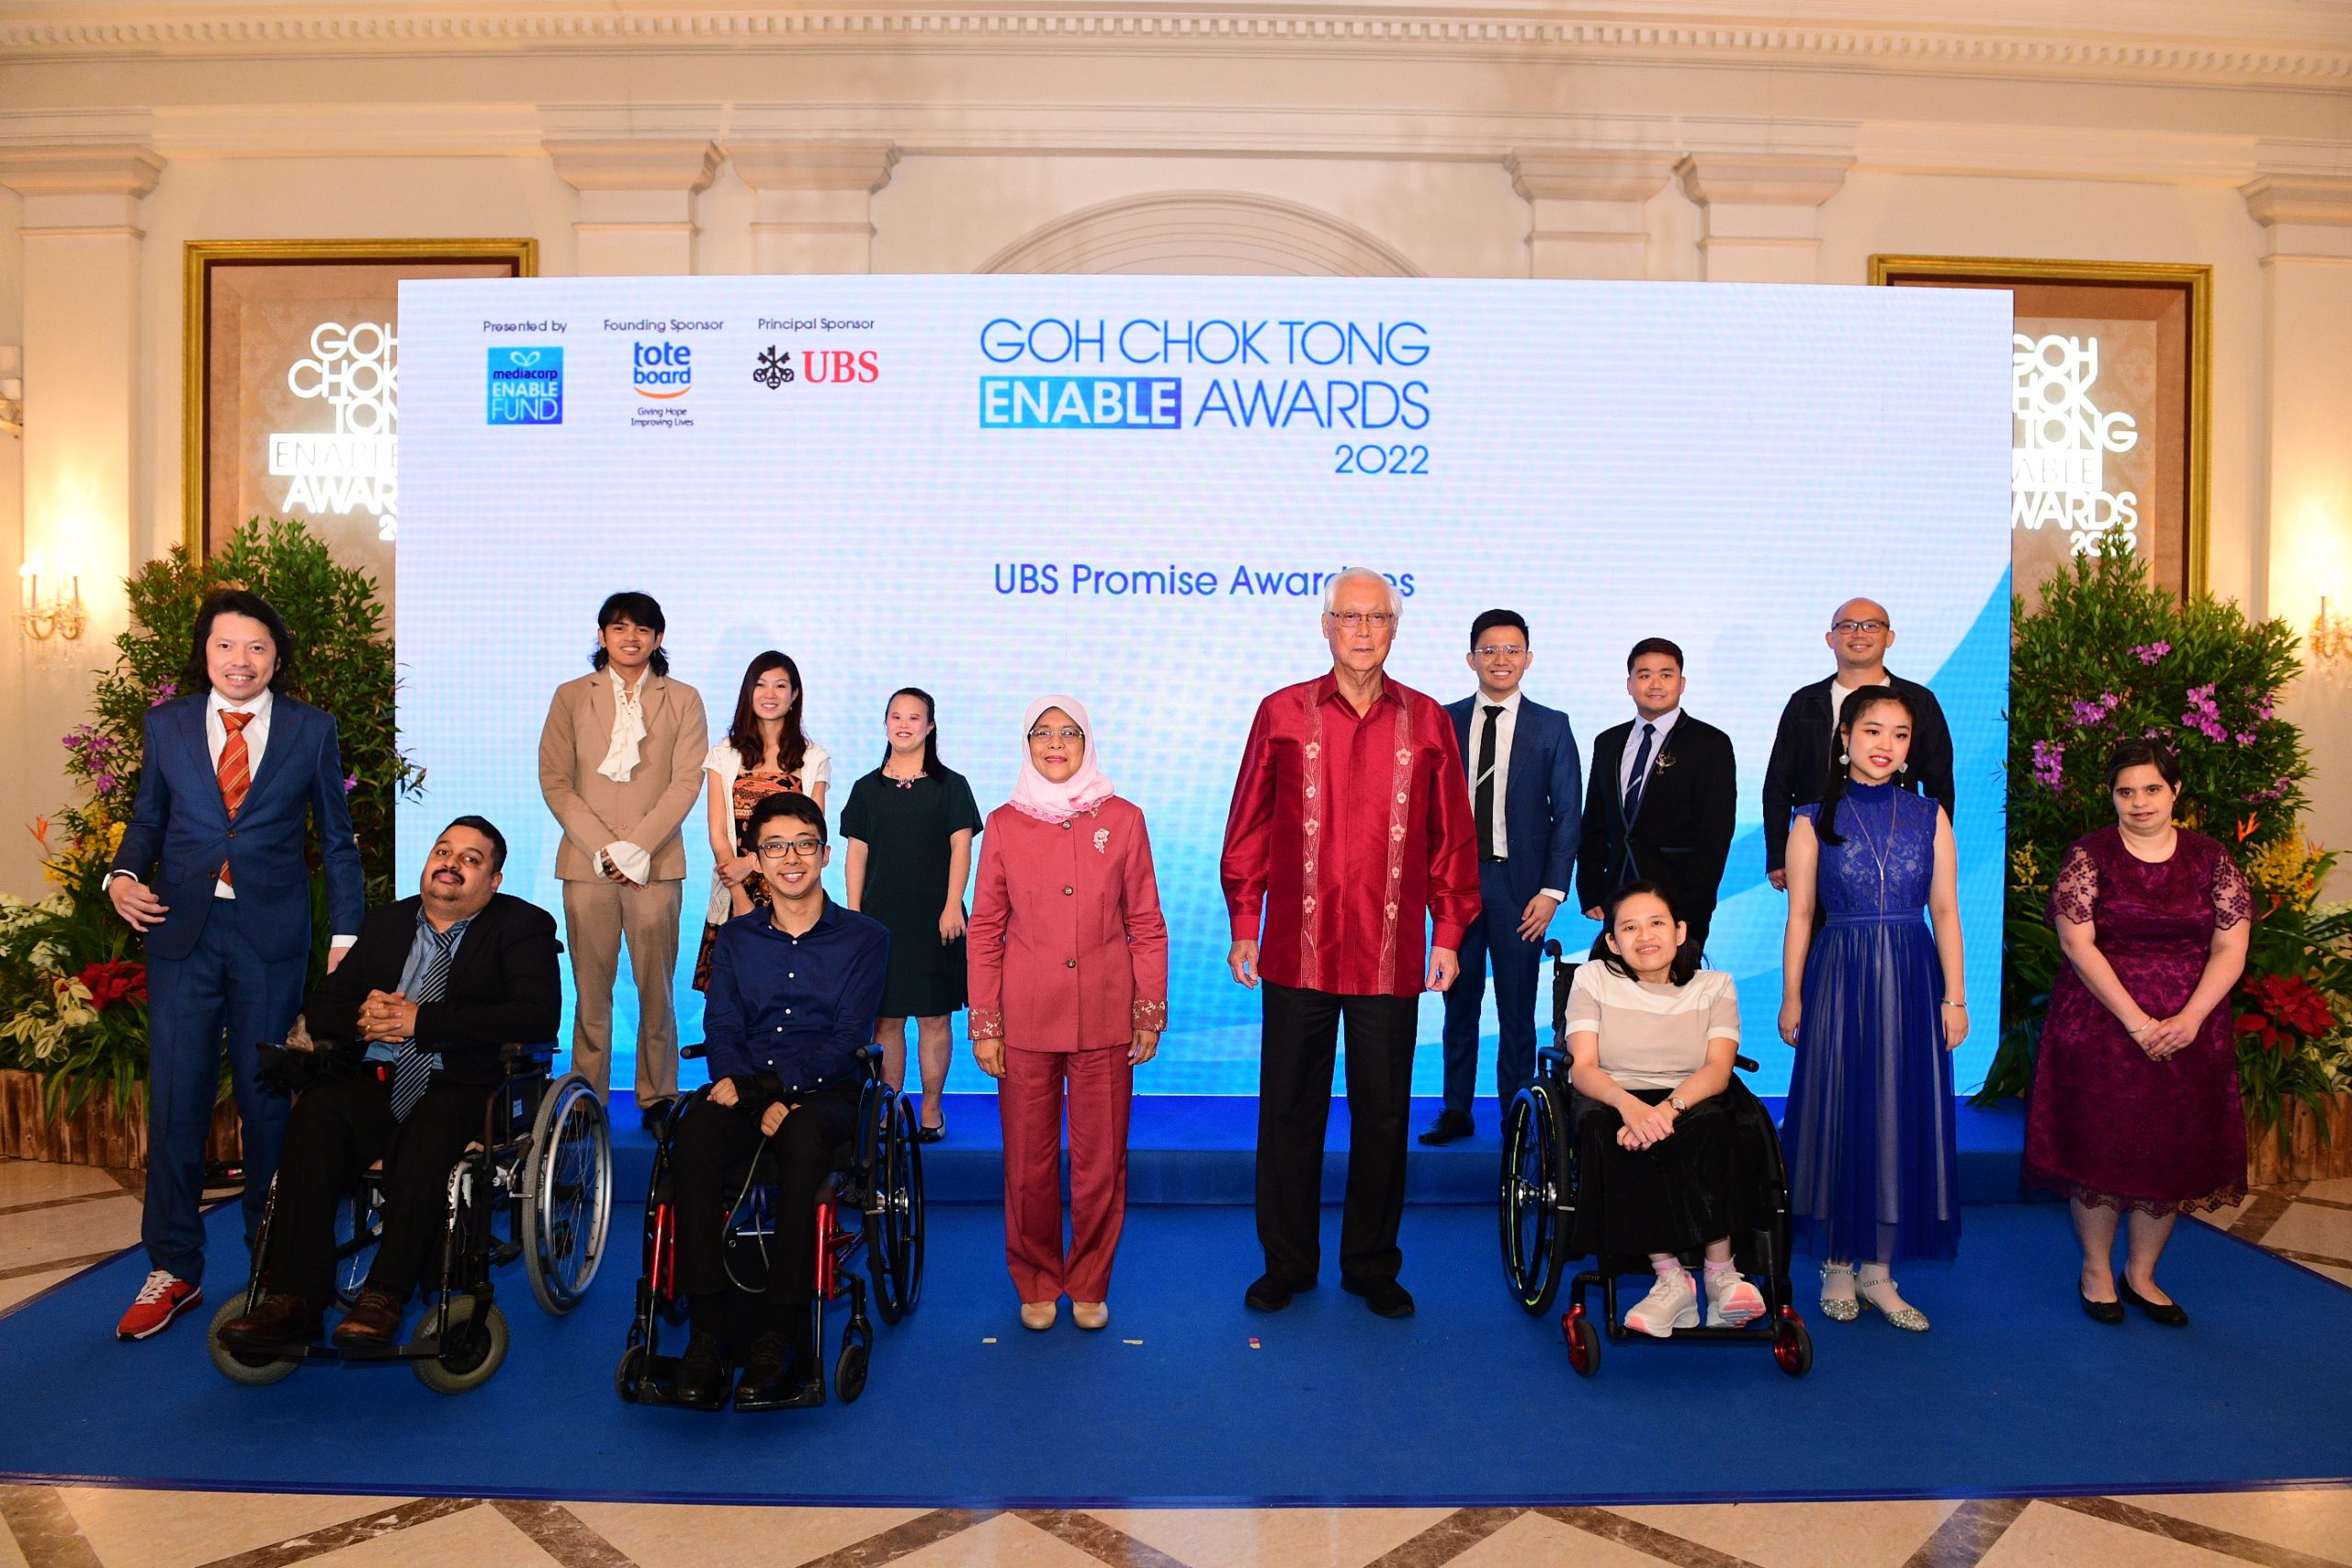 Photo show President Halimah Yacob, Emeritus Senior Minister Goh Chok Tong and the Goh Chok Tong Enable Awards 2022 UBS Promise awardees.